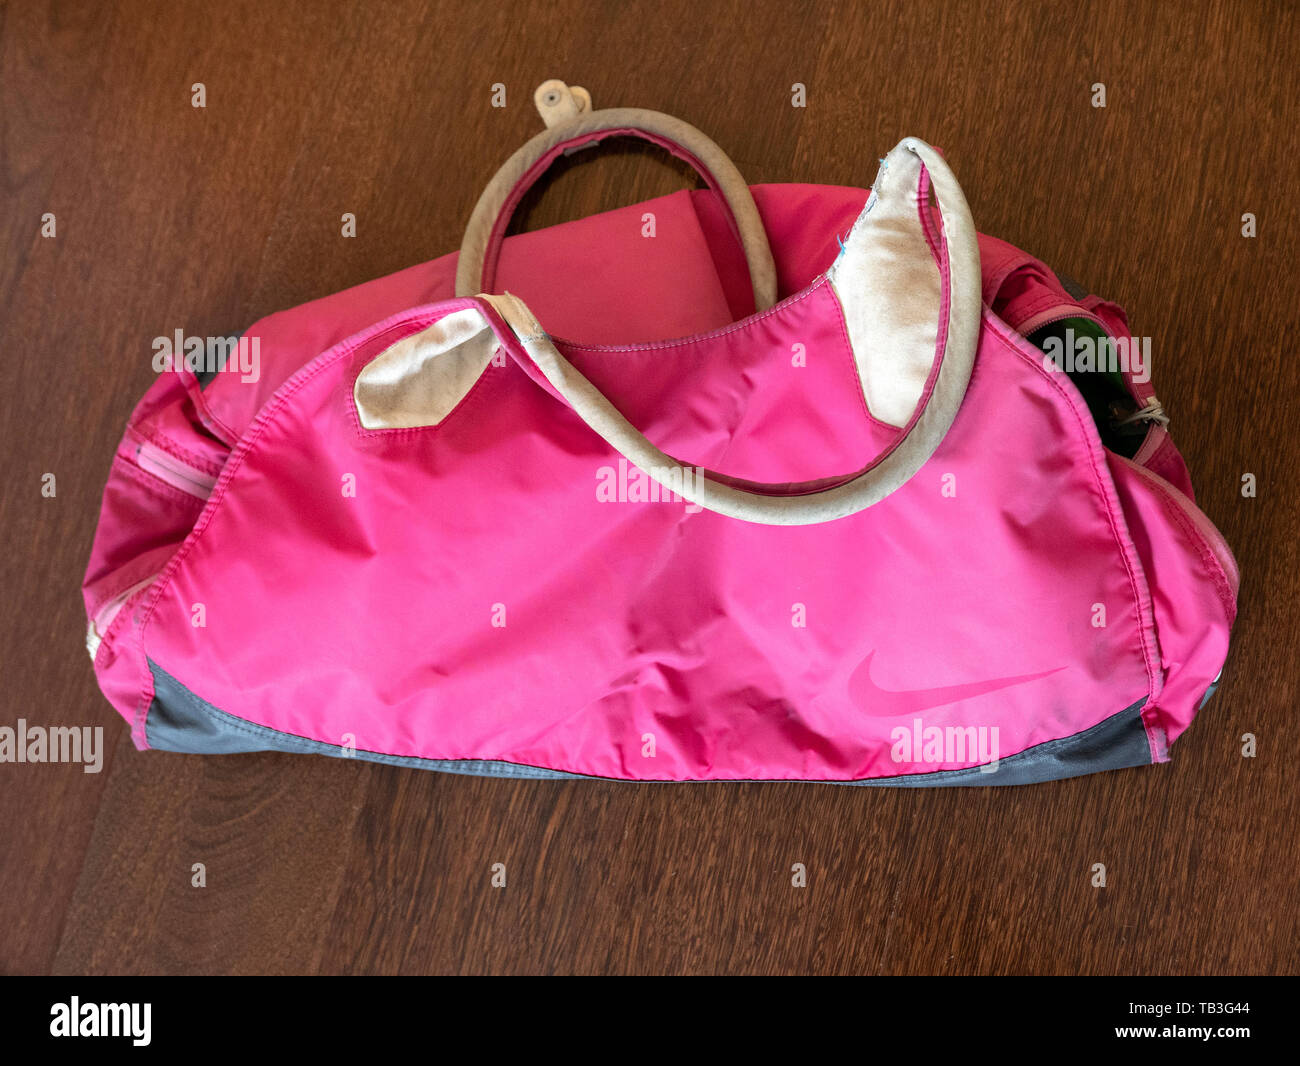 Pink gym bag Stock Photo